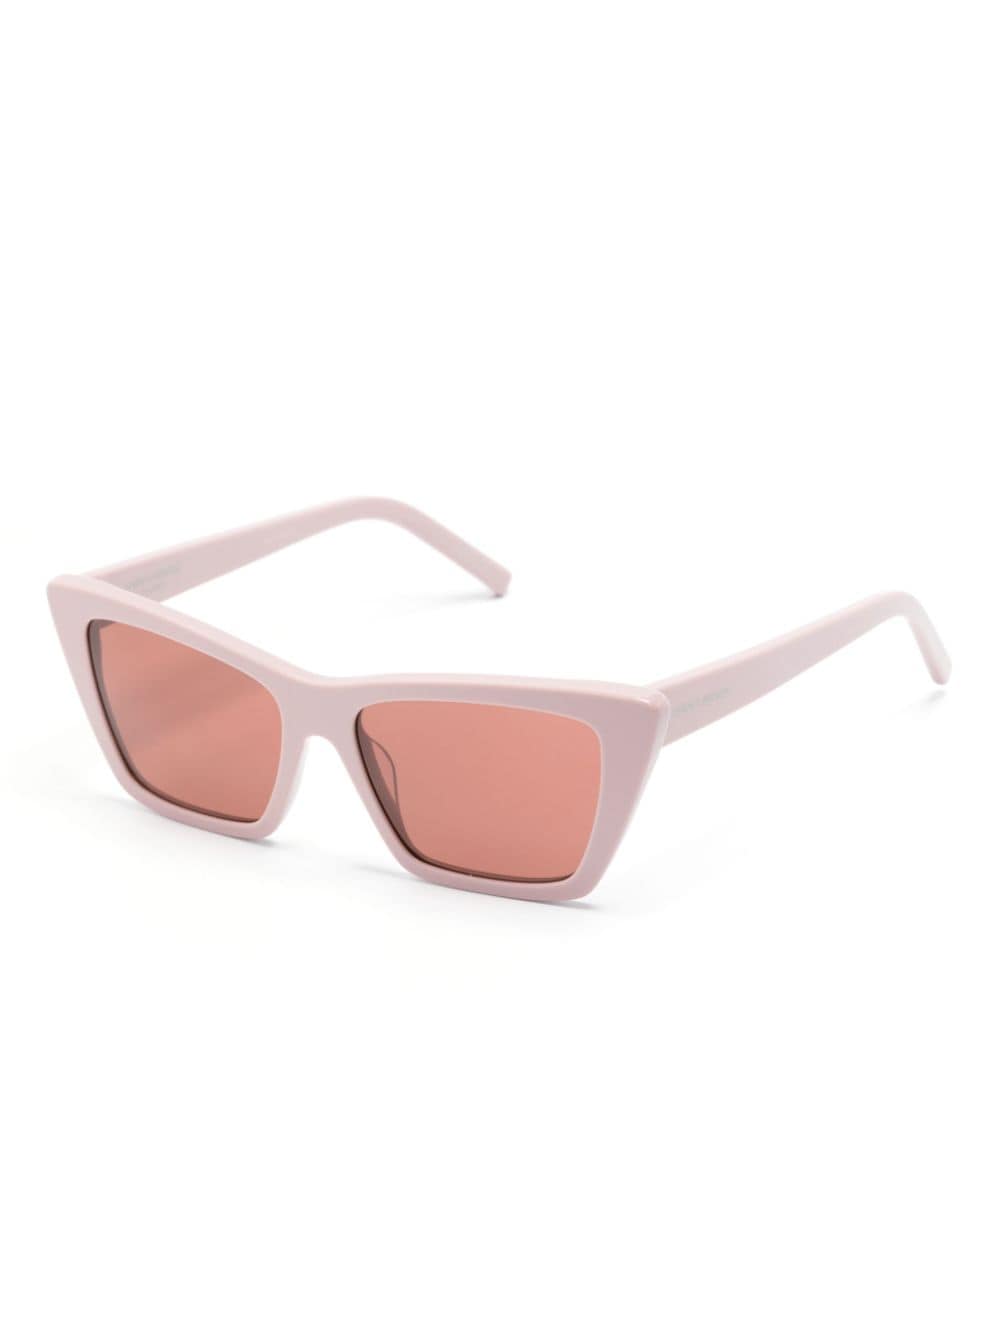 Saint Laurent Eyewear SL 276 Mica zonnebril met cat-eye montuur - Roze